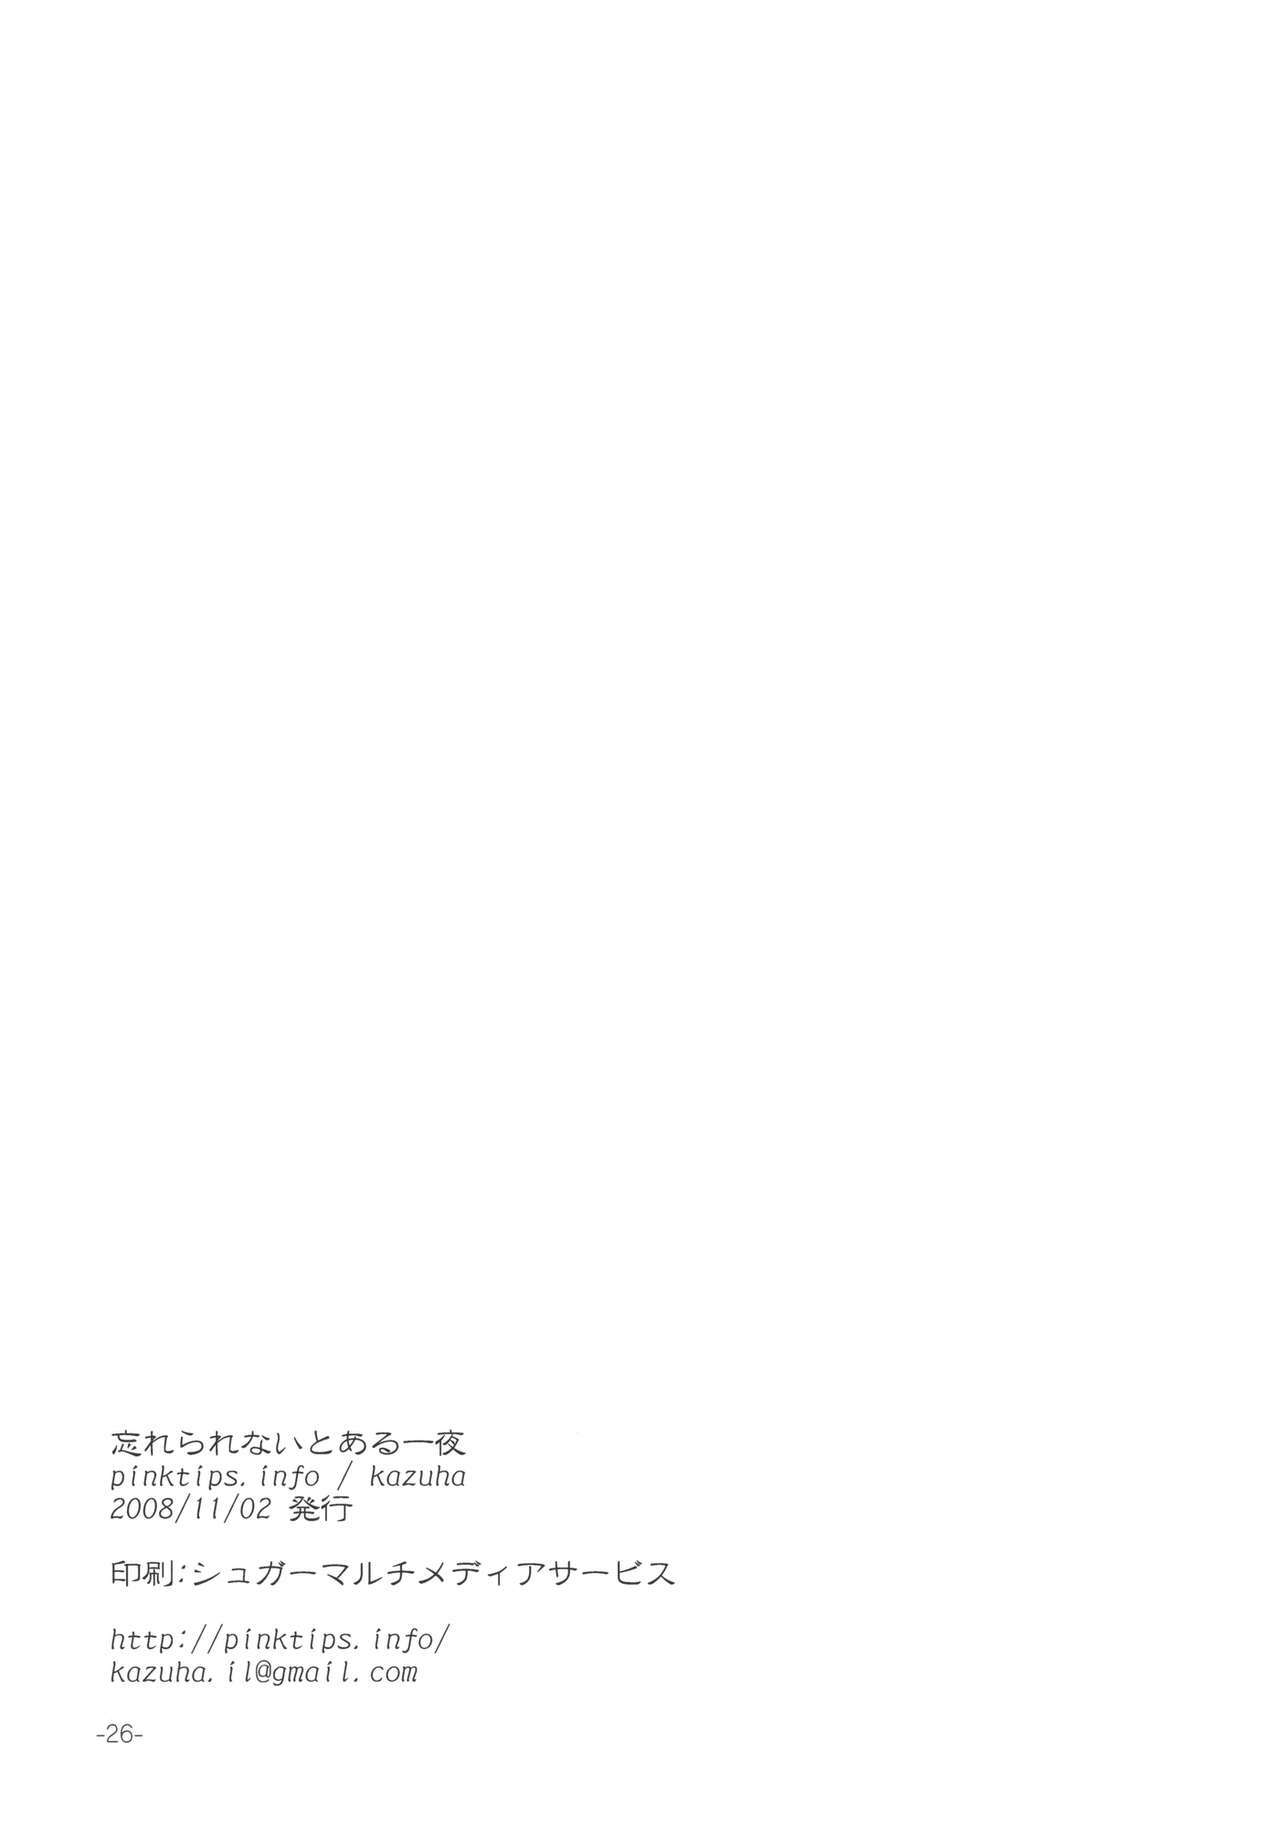 (Kouroumu 4) [pinktips.info (kazuha)] Wasurerarenai Toaru Ichiya (Touhou Project) page 26 full